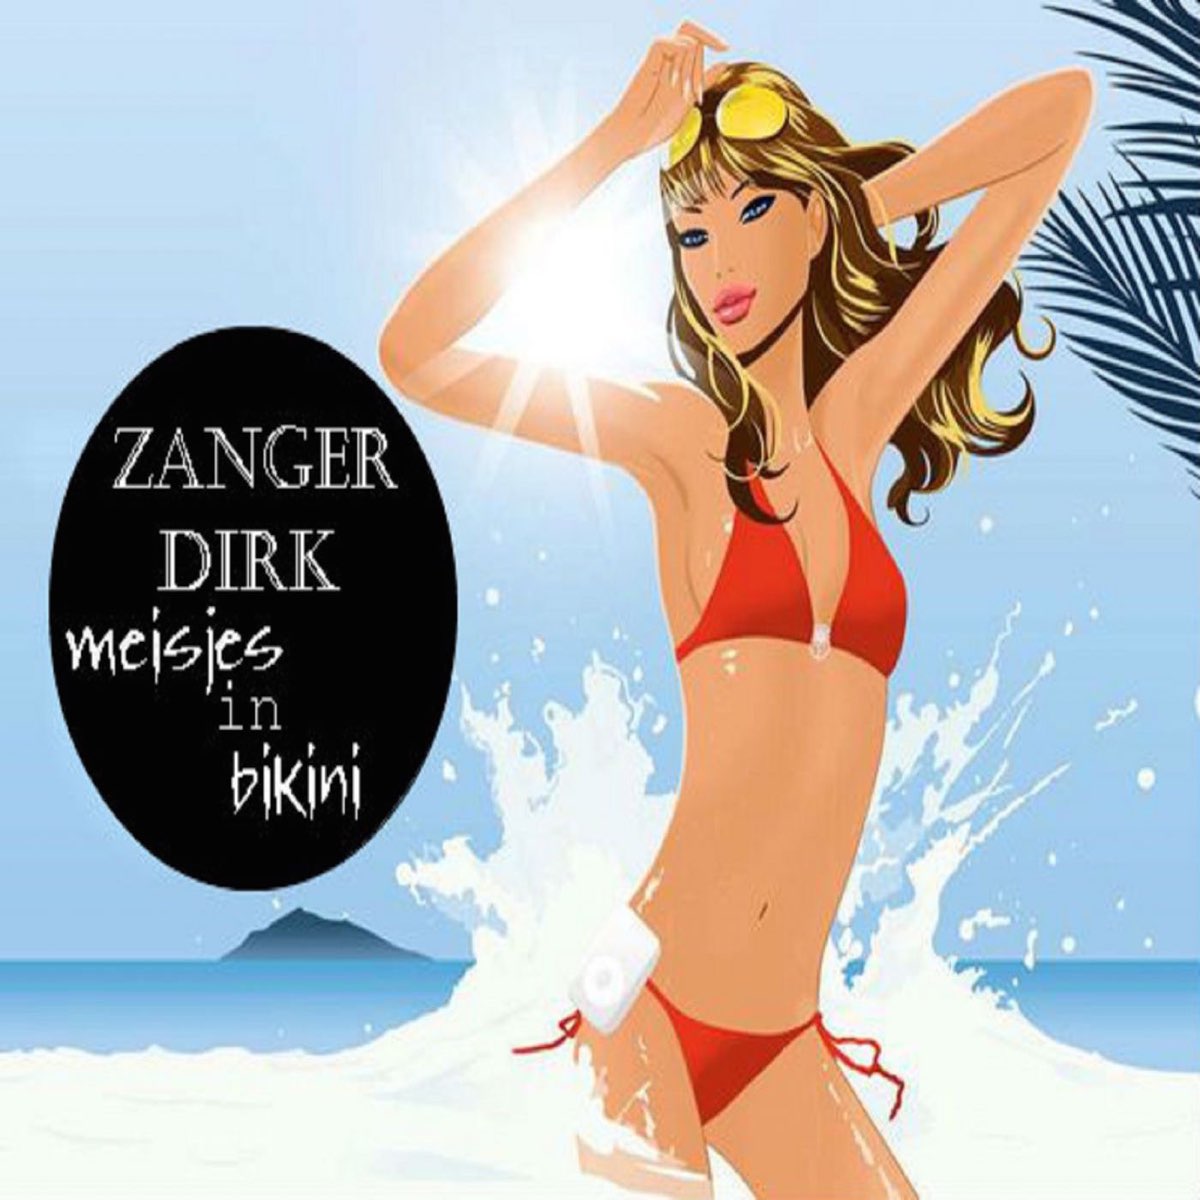 Meisjes In Bikini - Single by Dirk on Apple Music